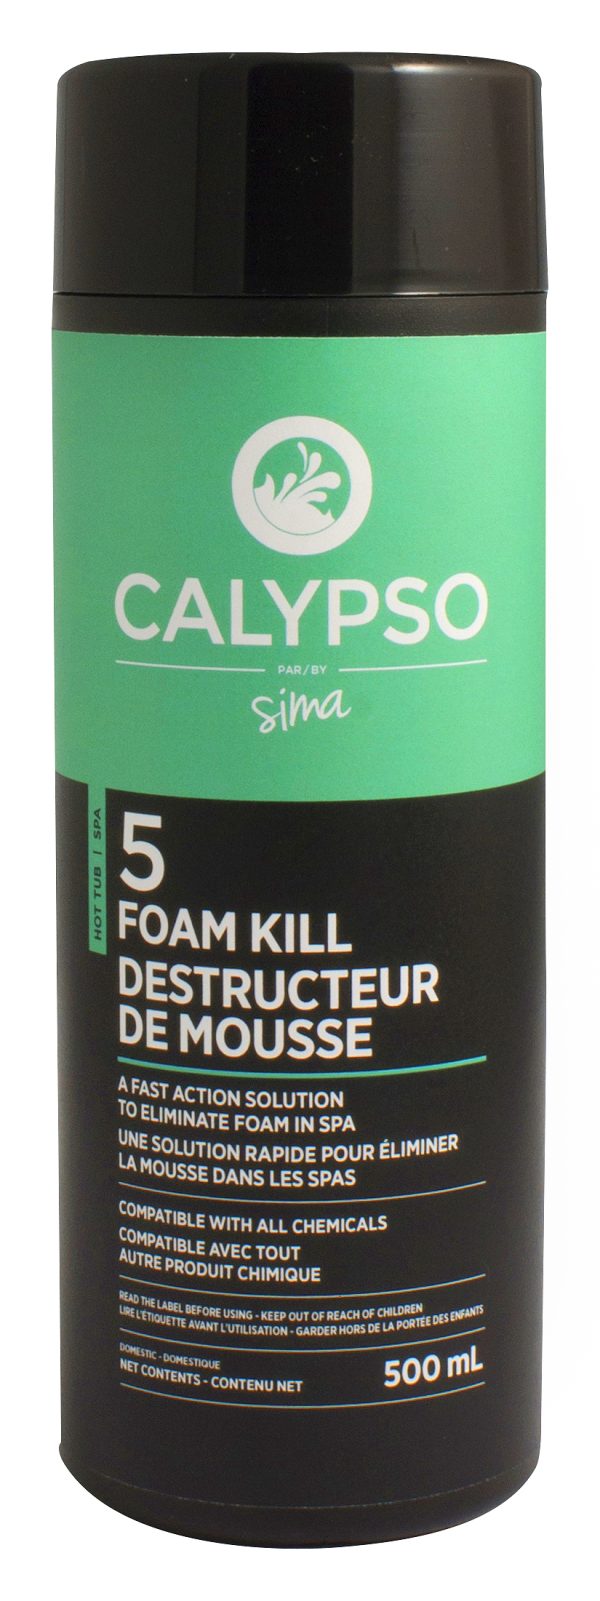 Calypso Destructeur de mousse #5 - Spa products - Spa maintenance - Sima POOLS & SPAS